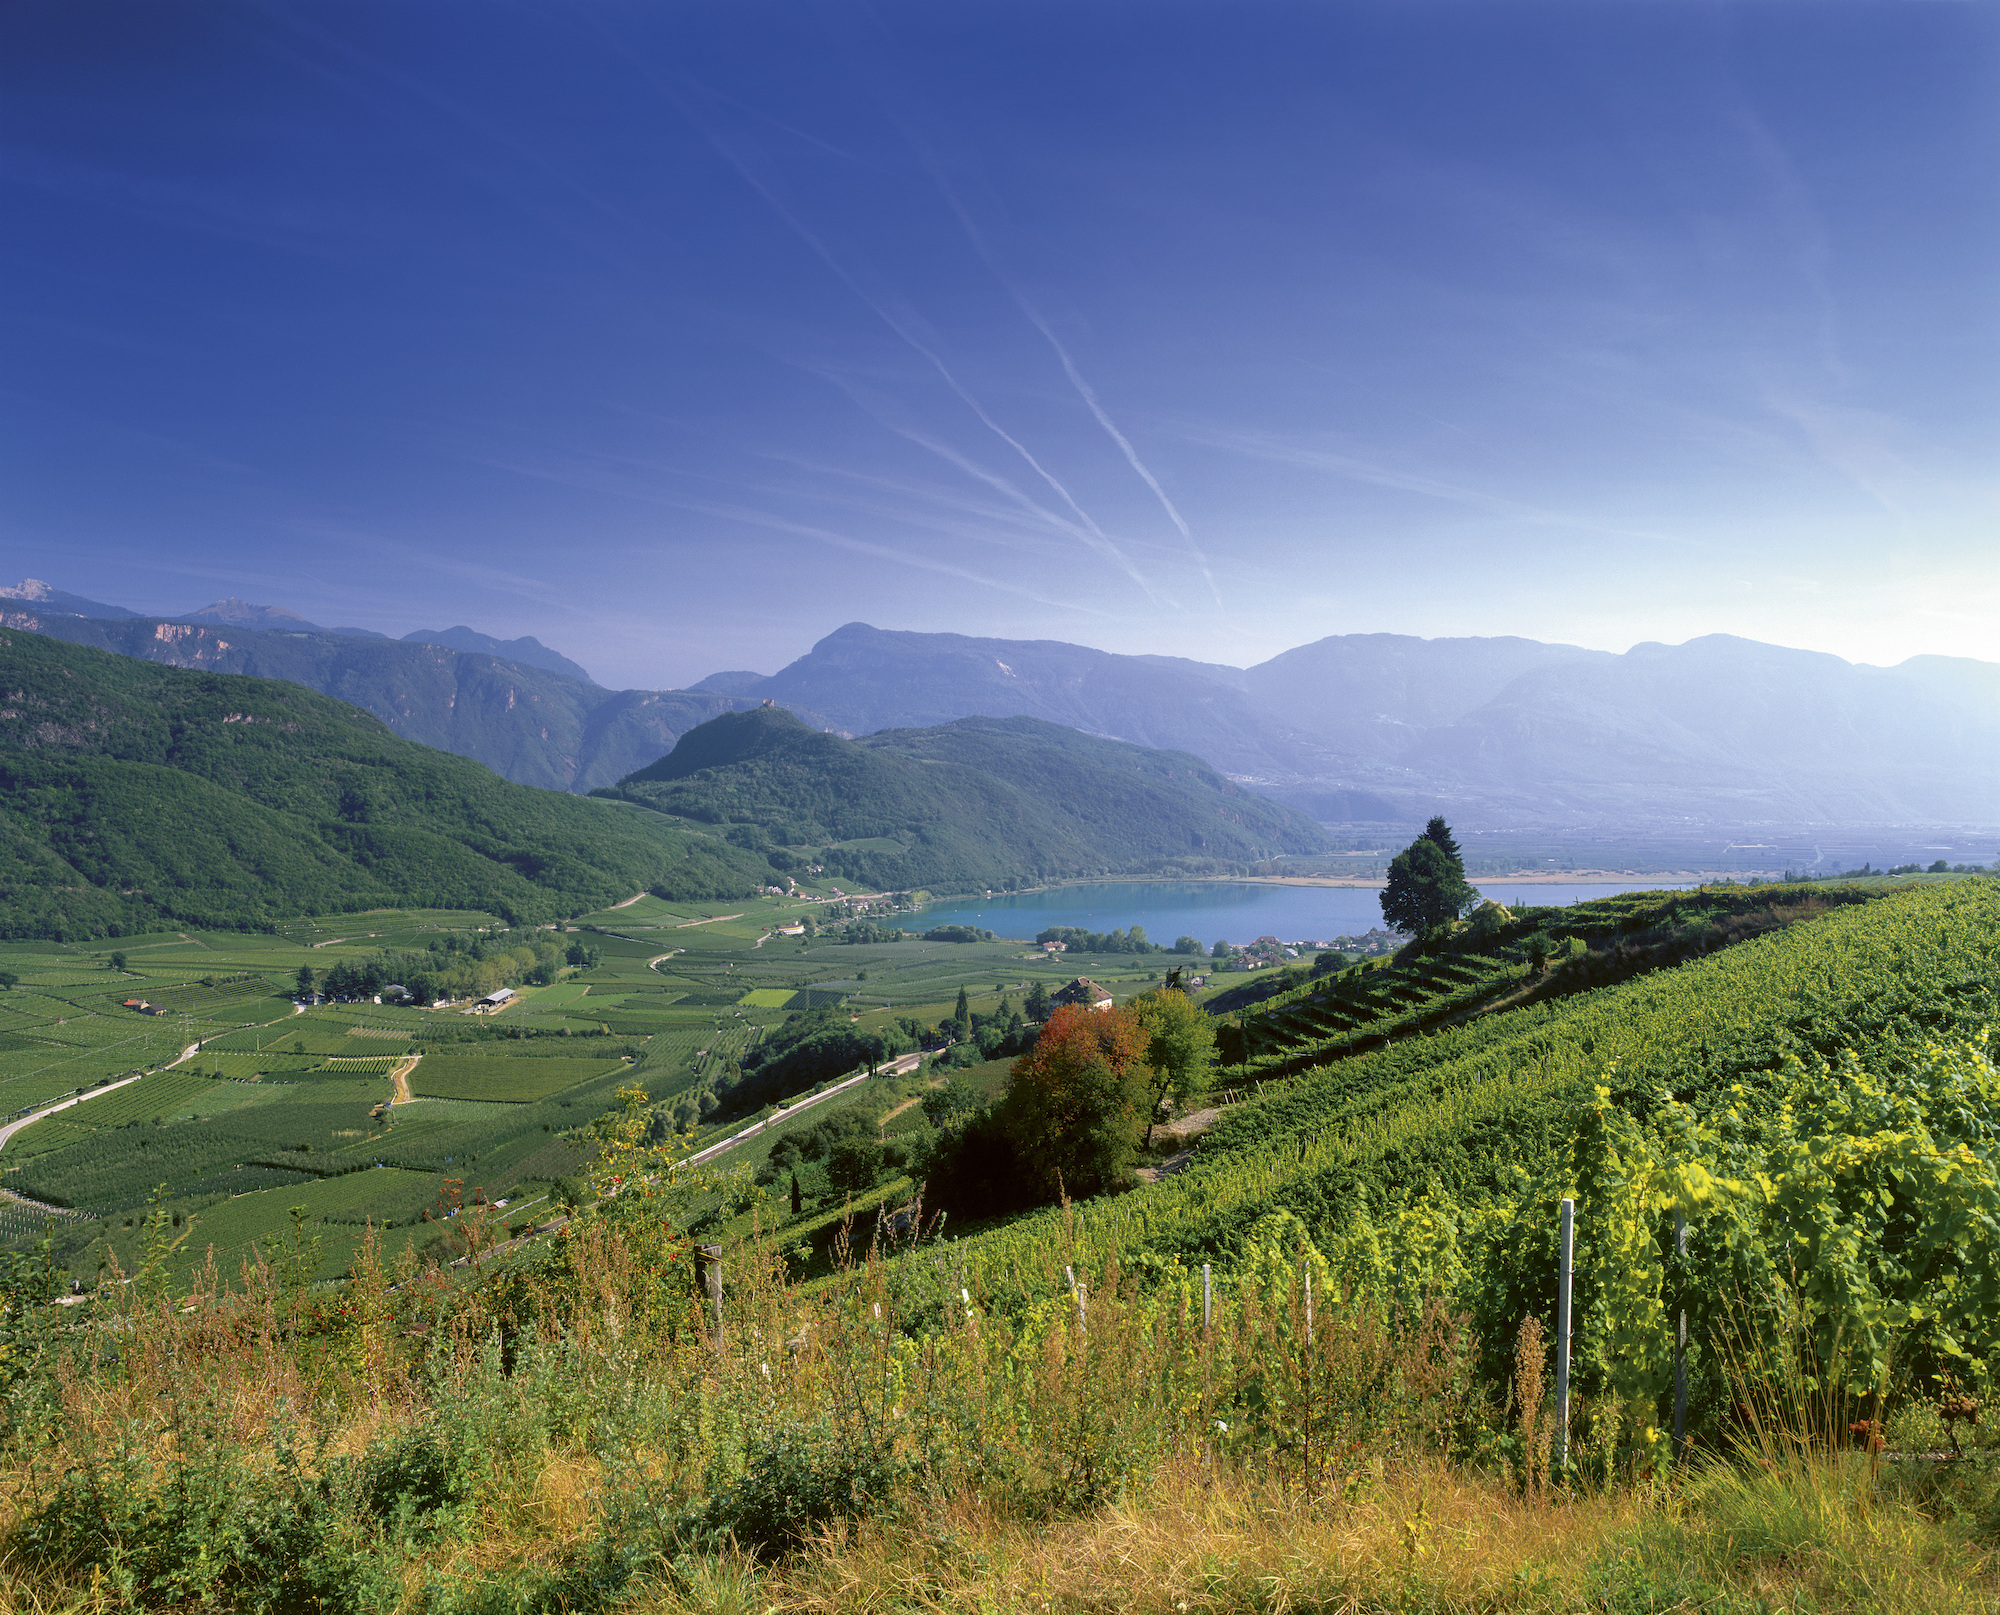 Farbenprächtig hält der Herbst Einzug in Südtirols Süden. Die sonnigen Weinberge in Unterland und Überetsch laden zum Wandern und Genießen ein.